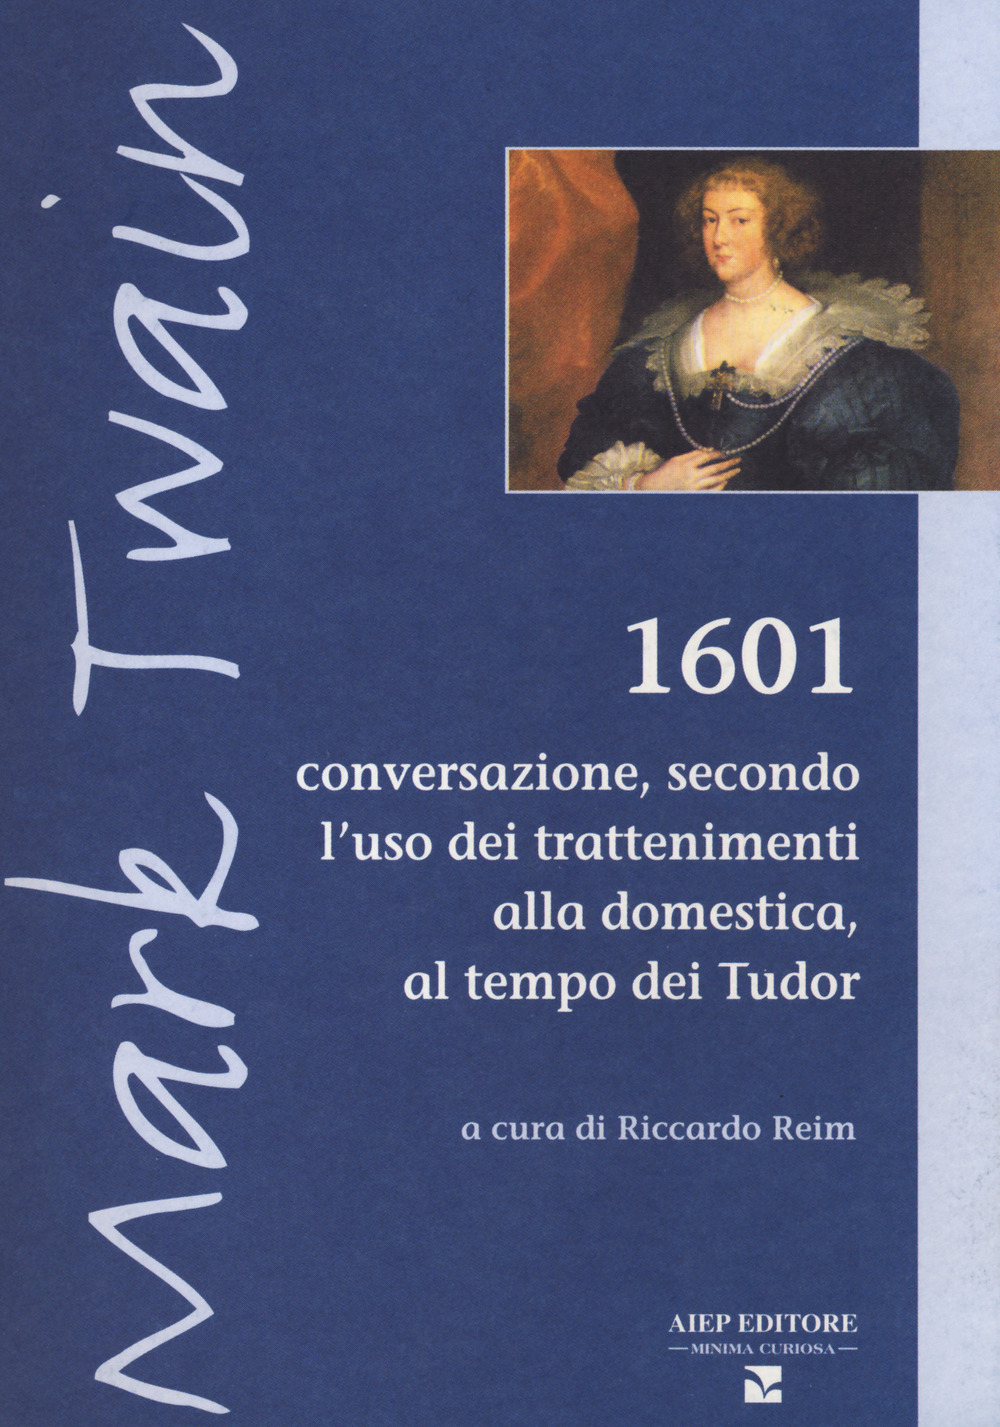 1601. Conversazione secondo l'uso dei trattenimenti alla domestica, al tempo dei Tudor